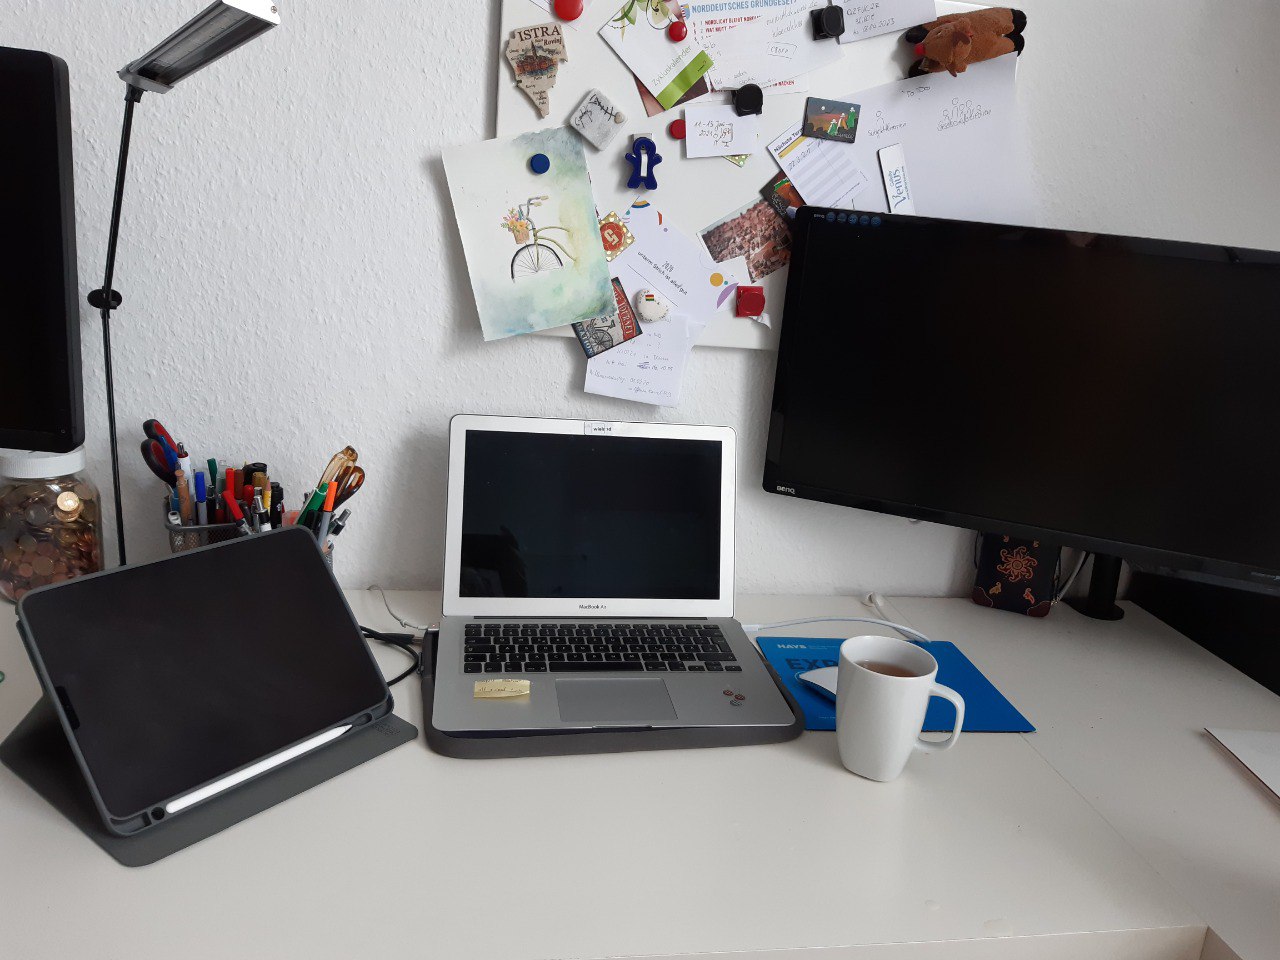 Bild eines Schreibtischs mit mehreren Bildschirmen und einem Laptop. Davor steht eine Kaffeetasse. Im Hintergrund an der Wand hängen ein paar Notizen und Bilder an einer Pinnwand.